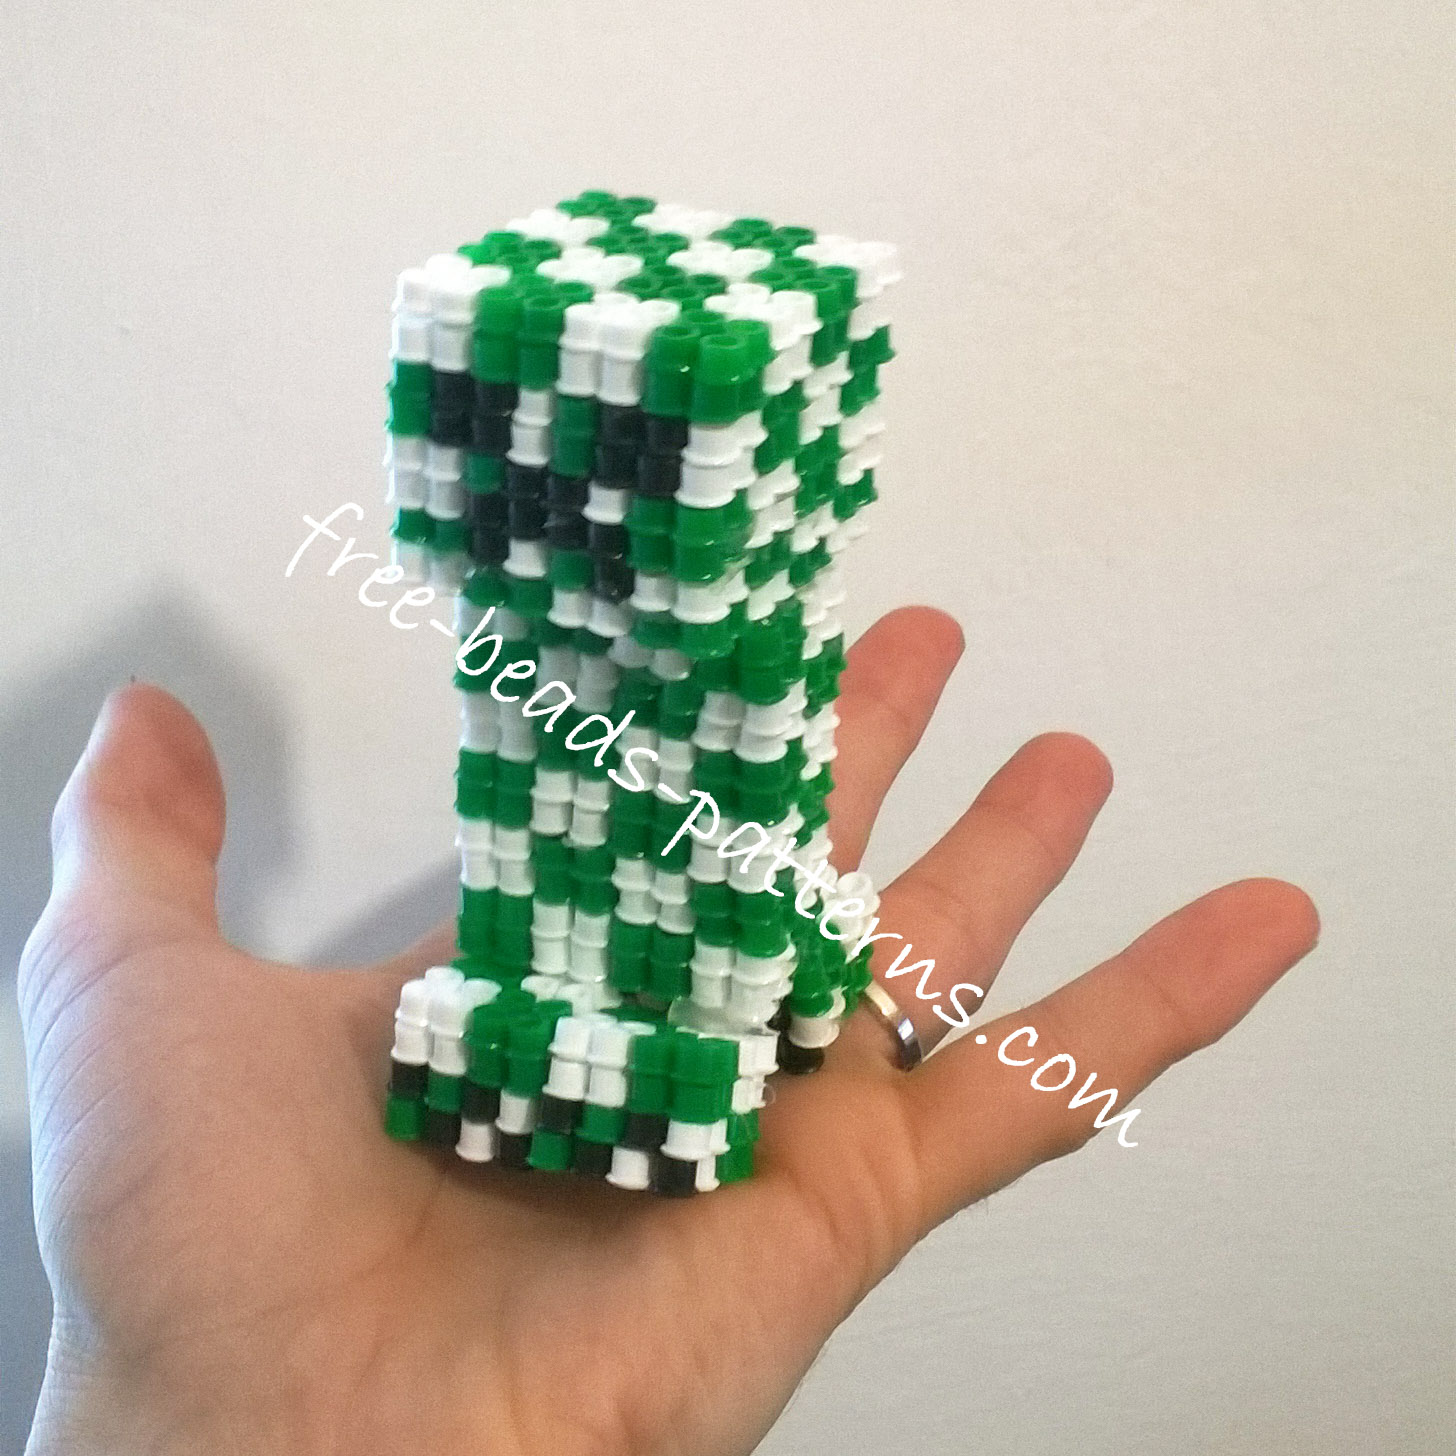 3D Perler Beads Minecraft Creeper final work photos 1